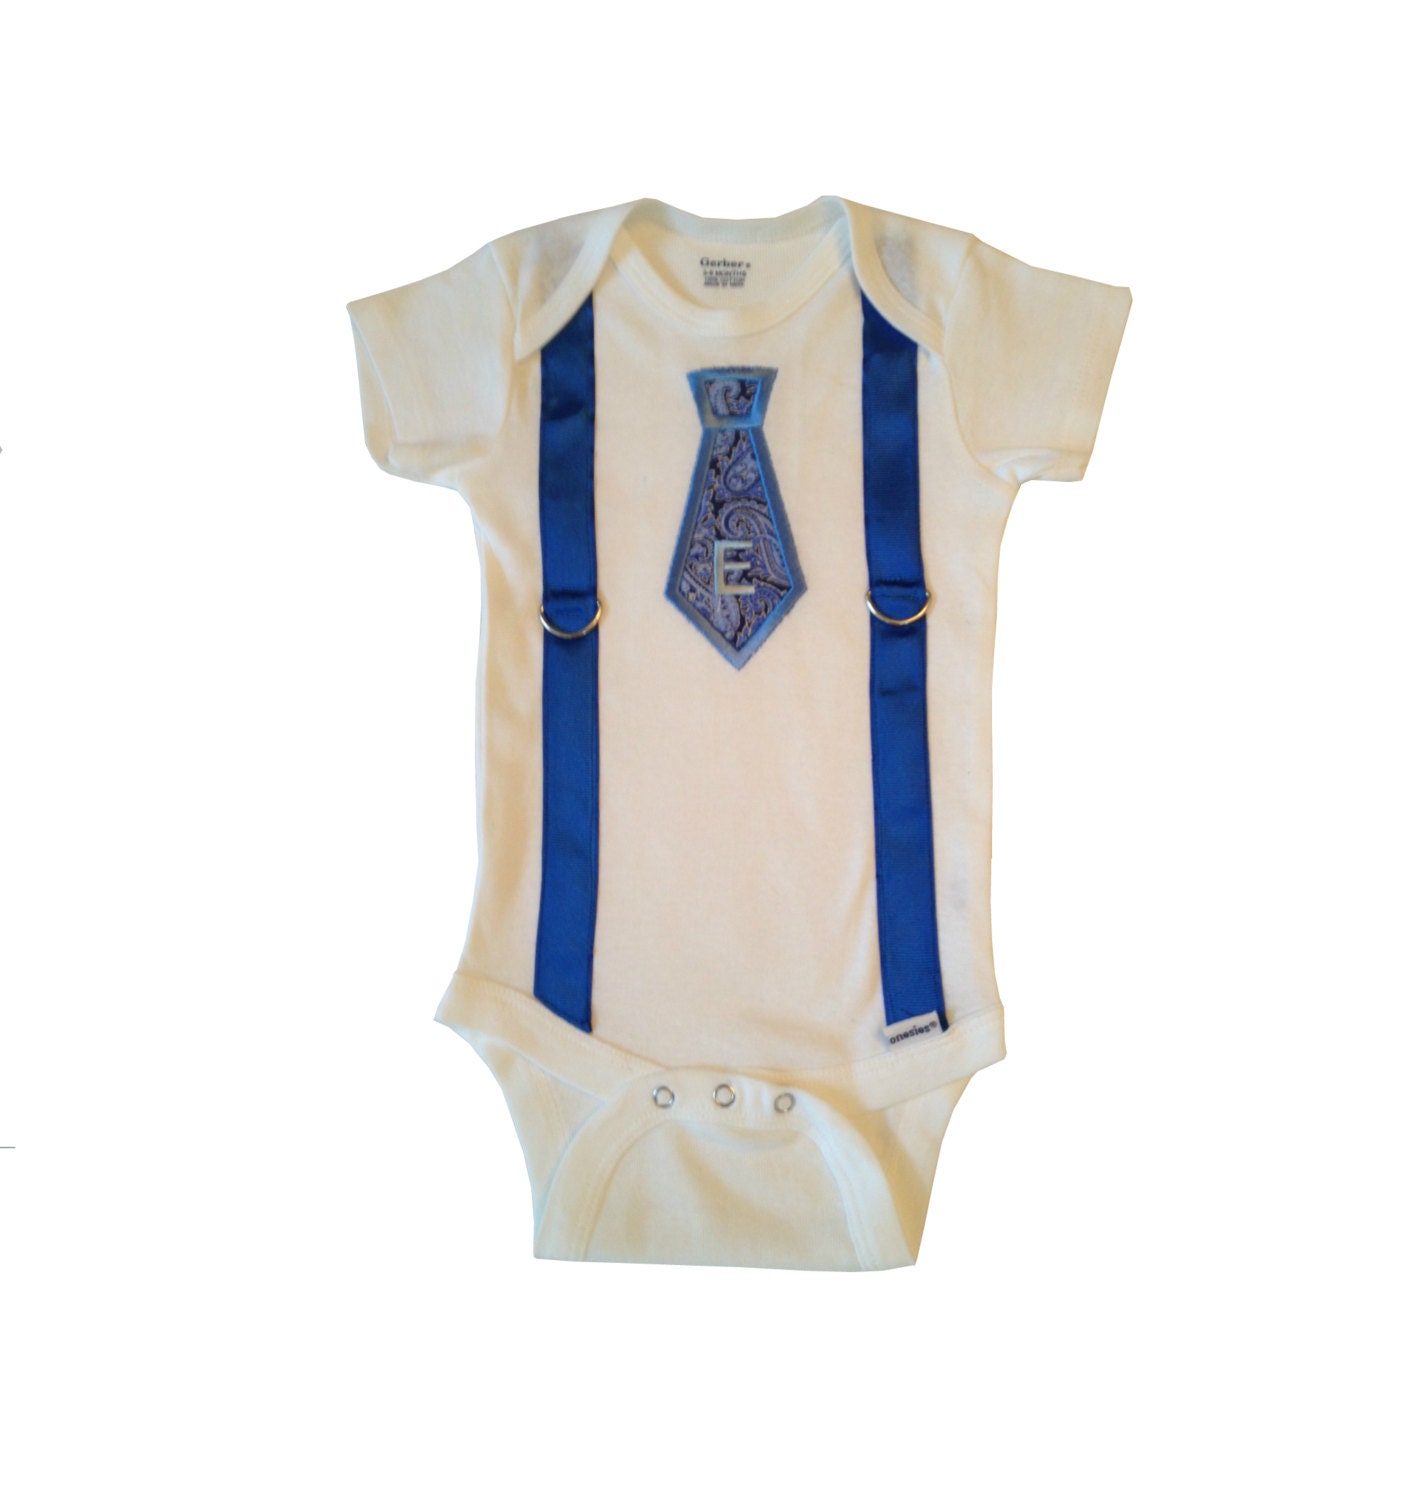 Baby Boy Tie Applique Onesie with Suspenders by PreciousBabyAttire